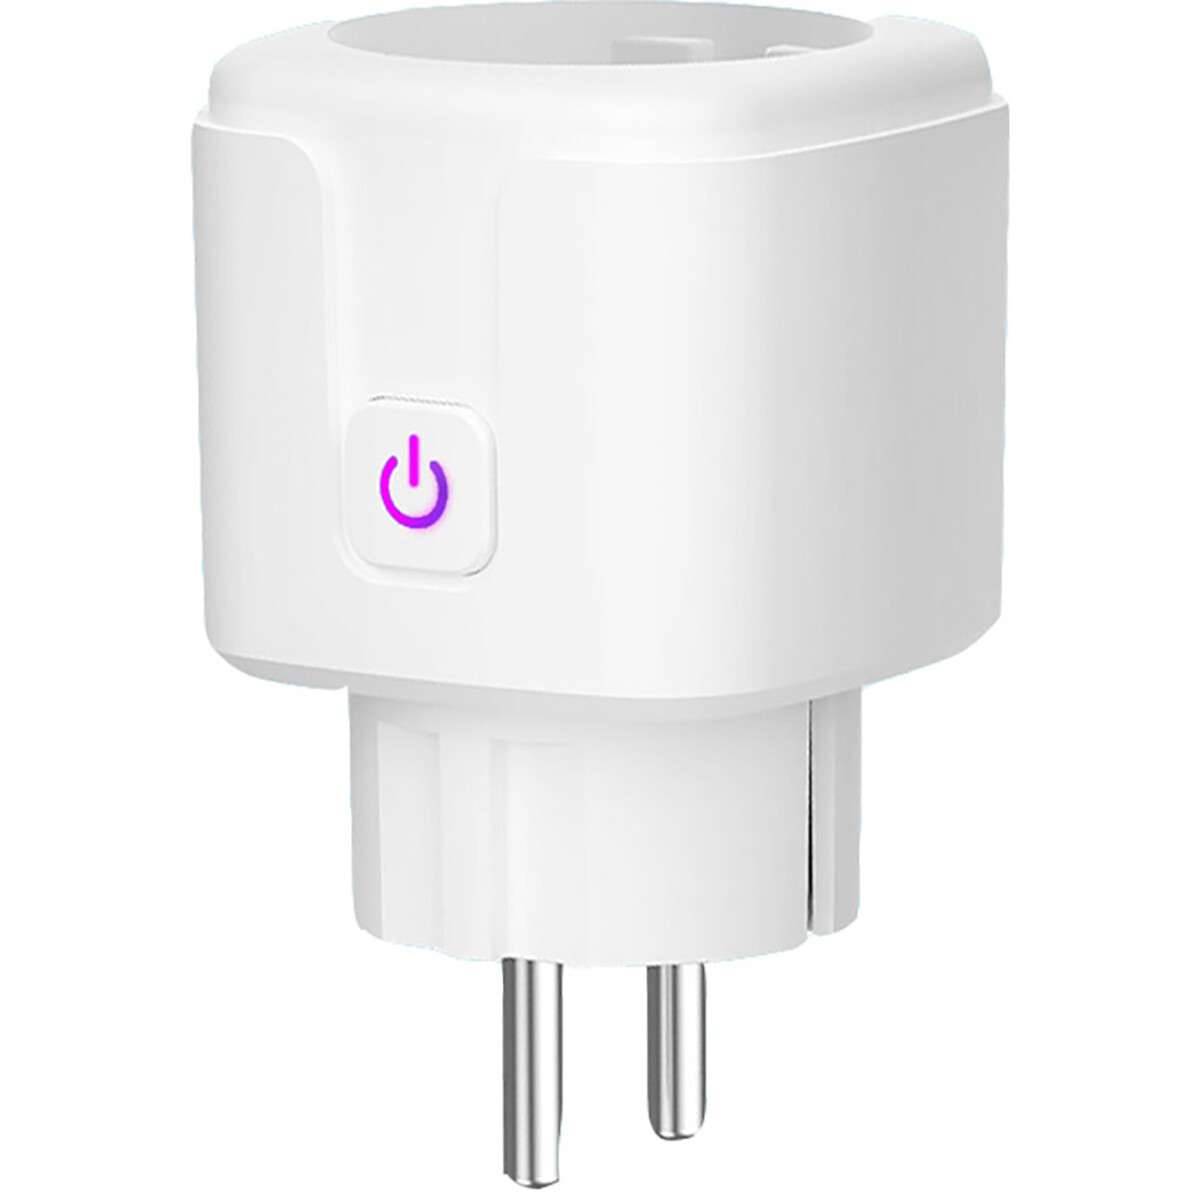 Slimme Stekker - Smart Plug - Besty - Wifi - Vierkant - Mat Wit